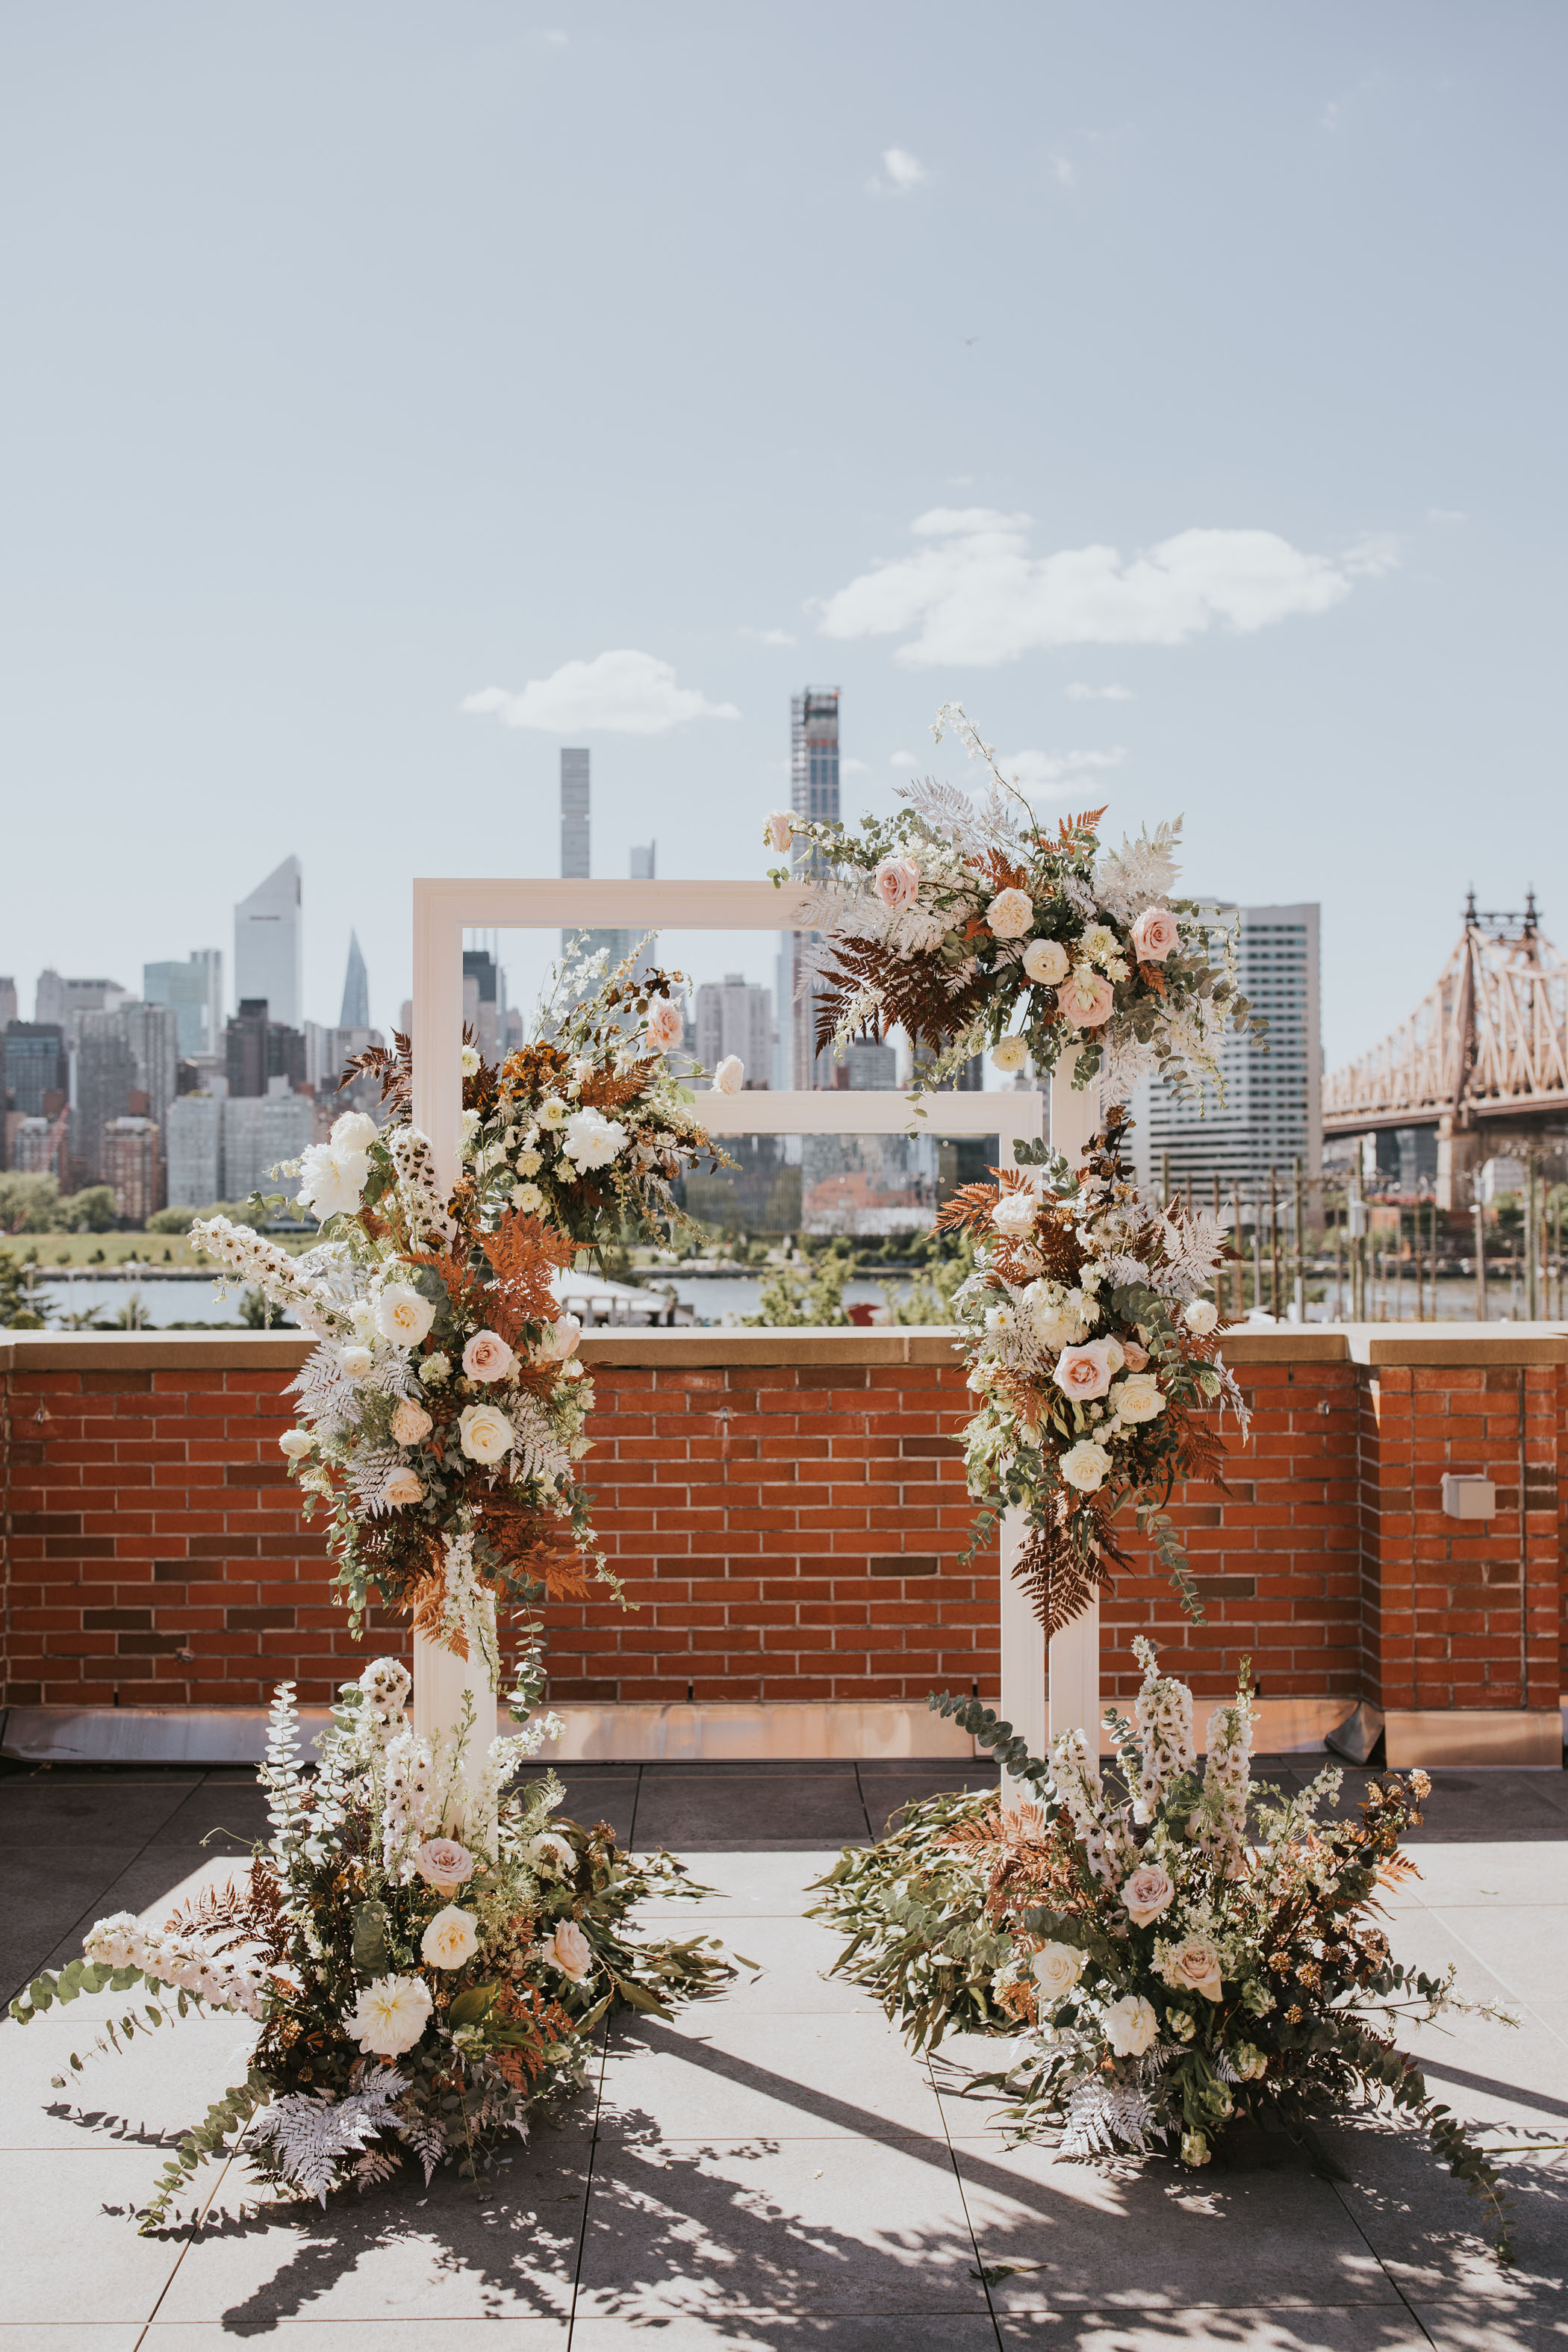 Floral NYC wedding ceremony backdrop